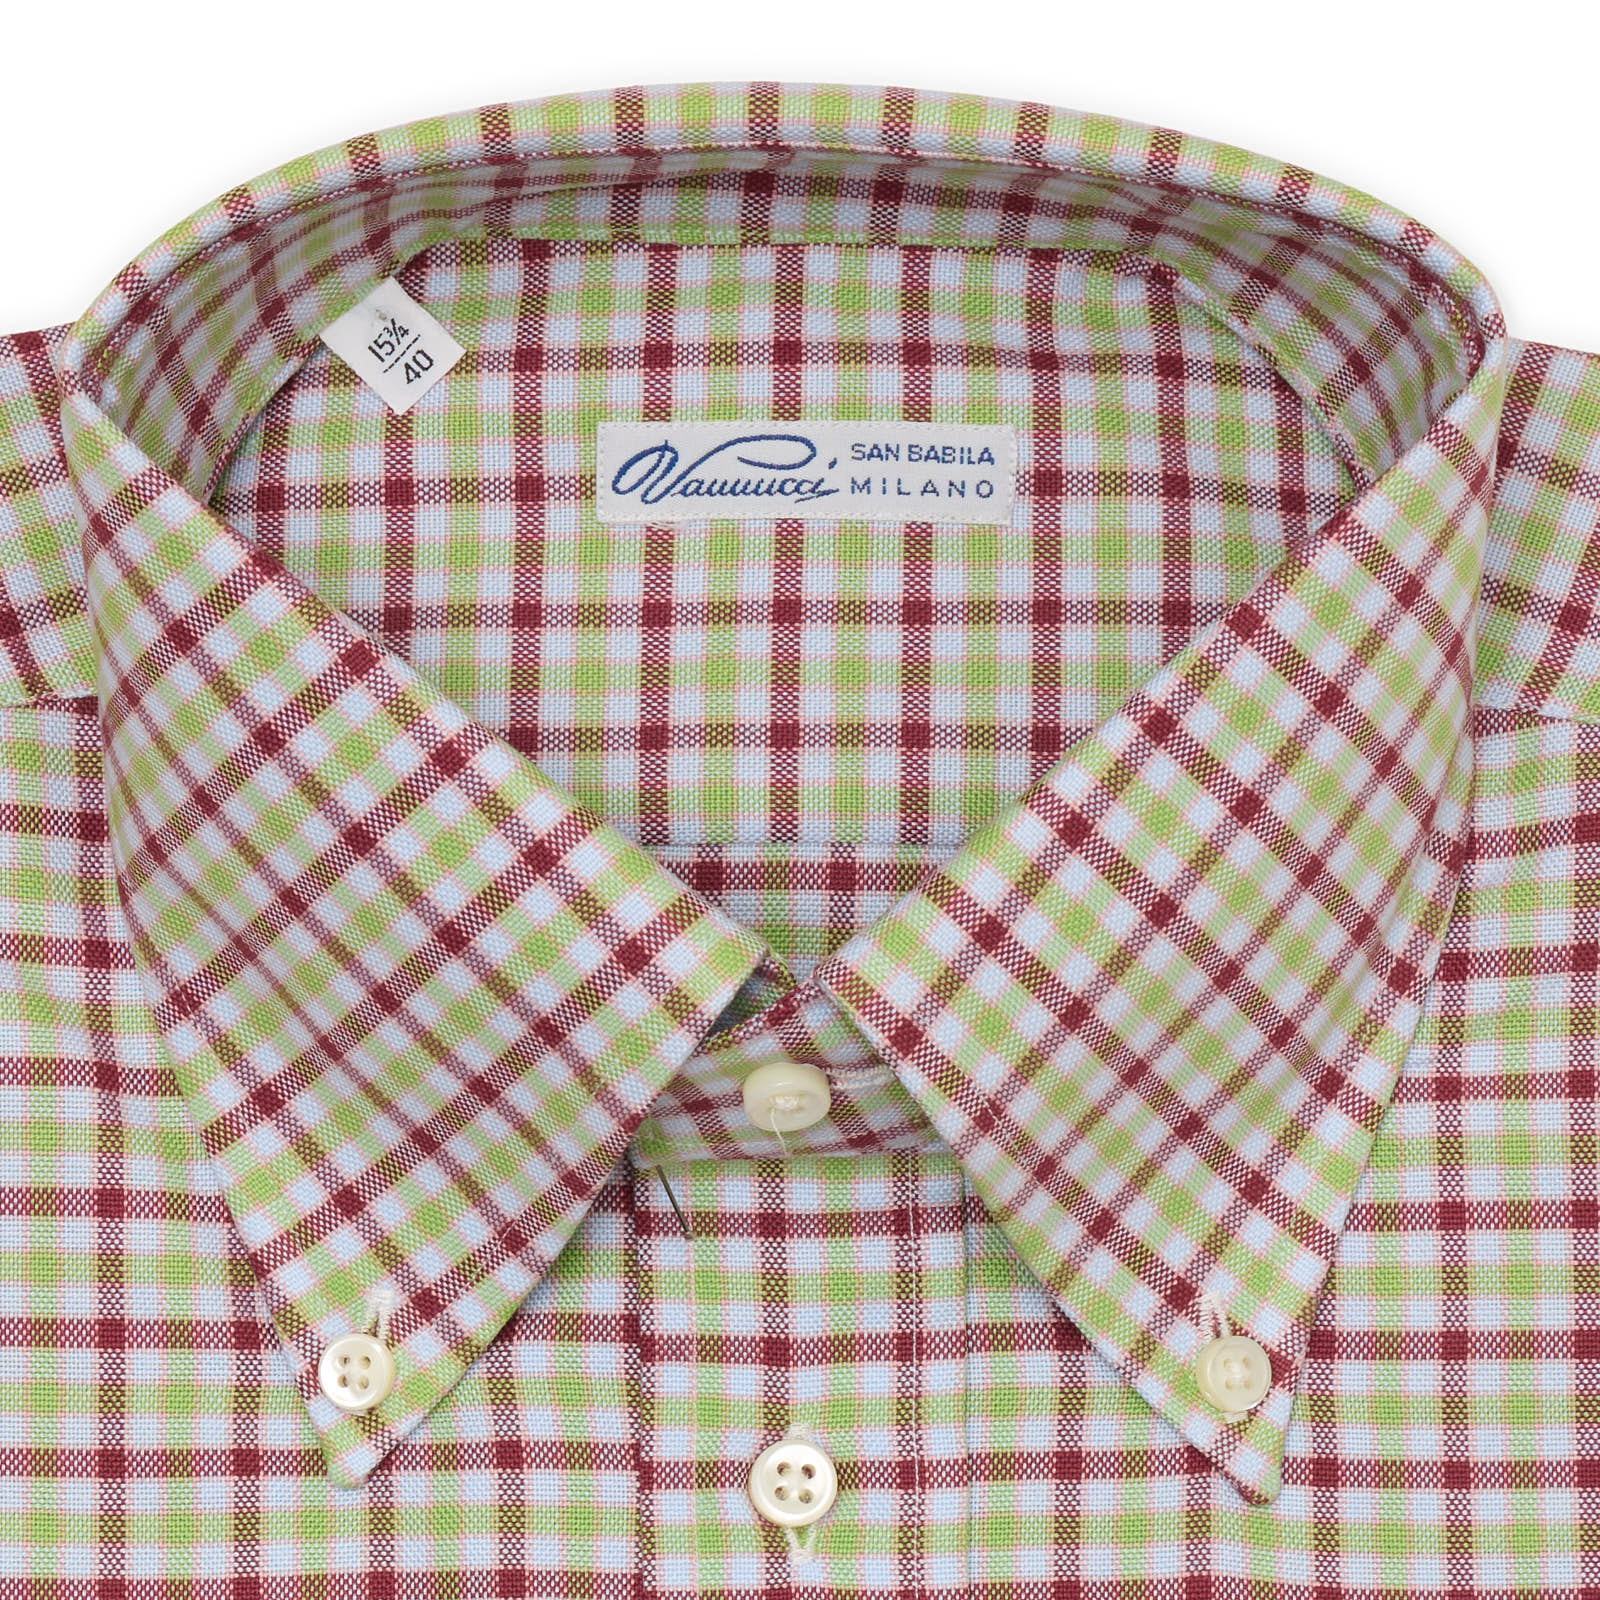 VANNUCCI Milano Multi-Color Plaid Cotton Button-Down Dress Shirt EU 40 NEW US 15.75